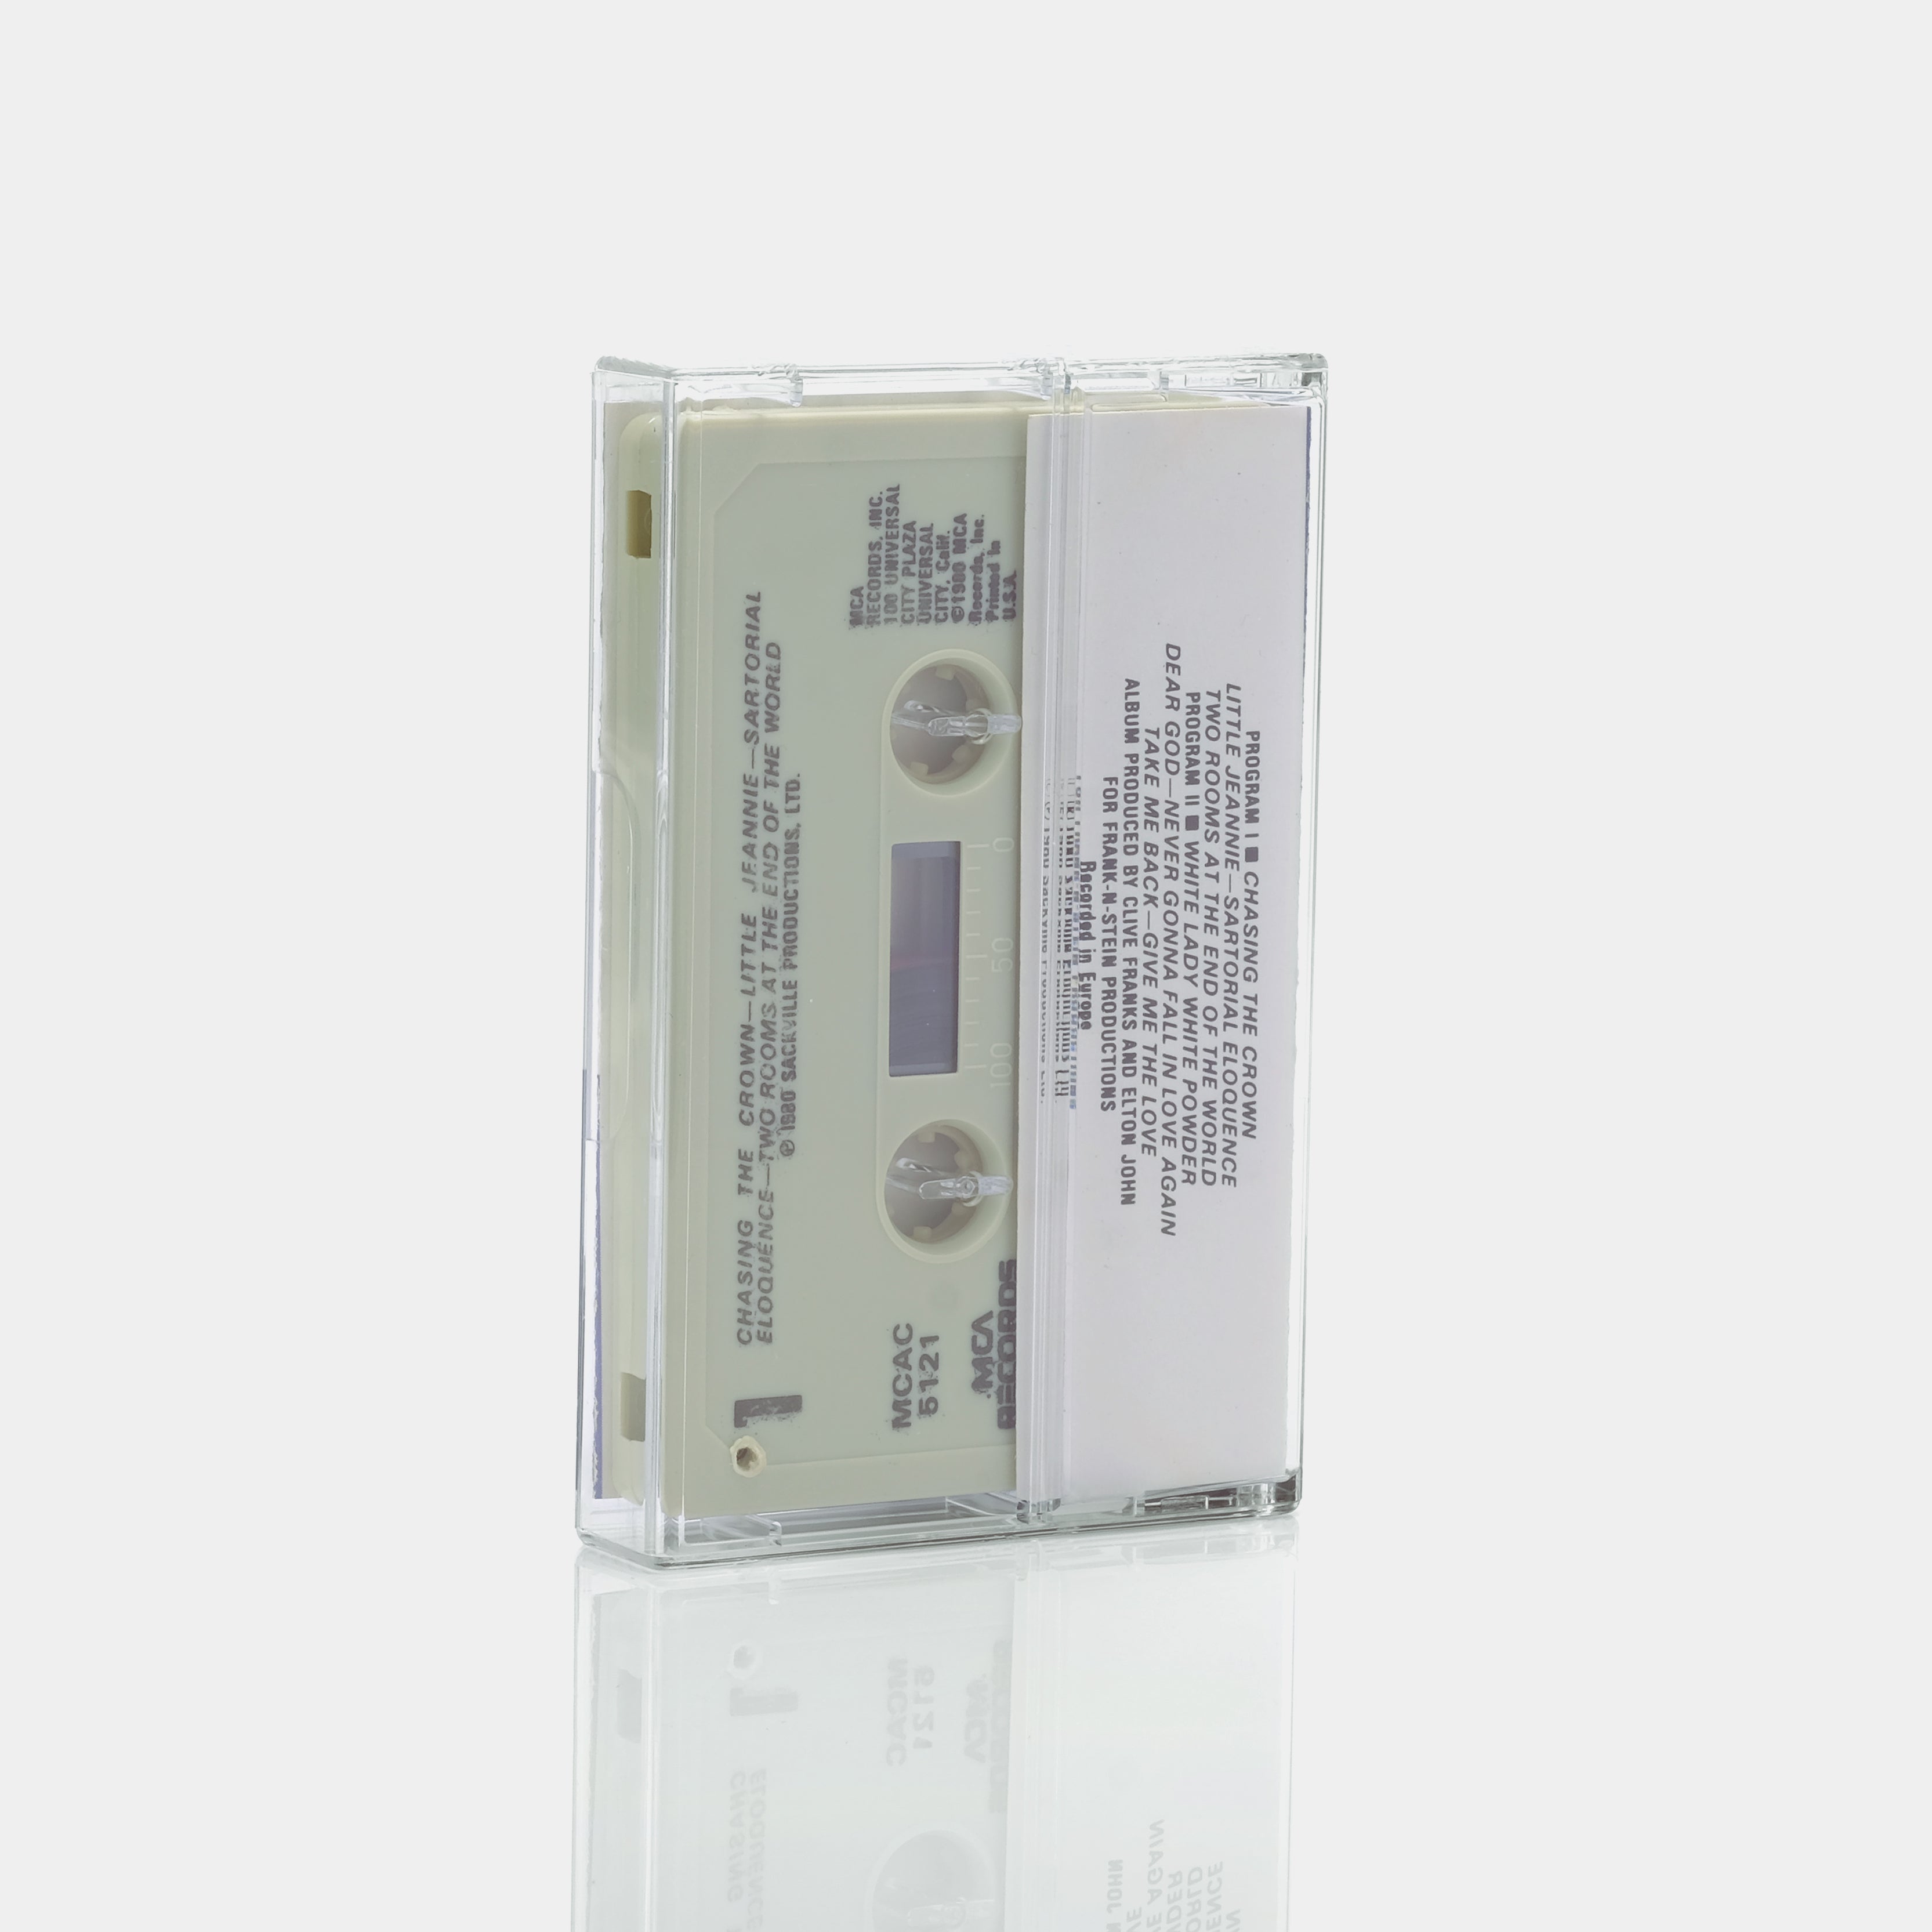 Elton John - 21 At 33 Cassette Tape